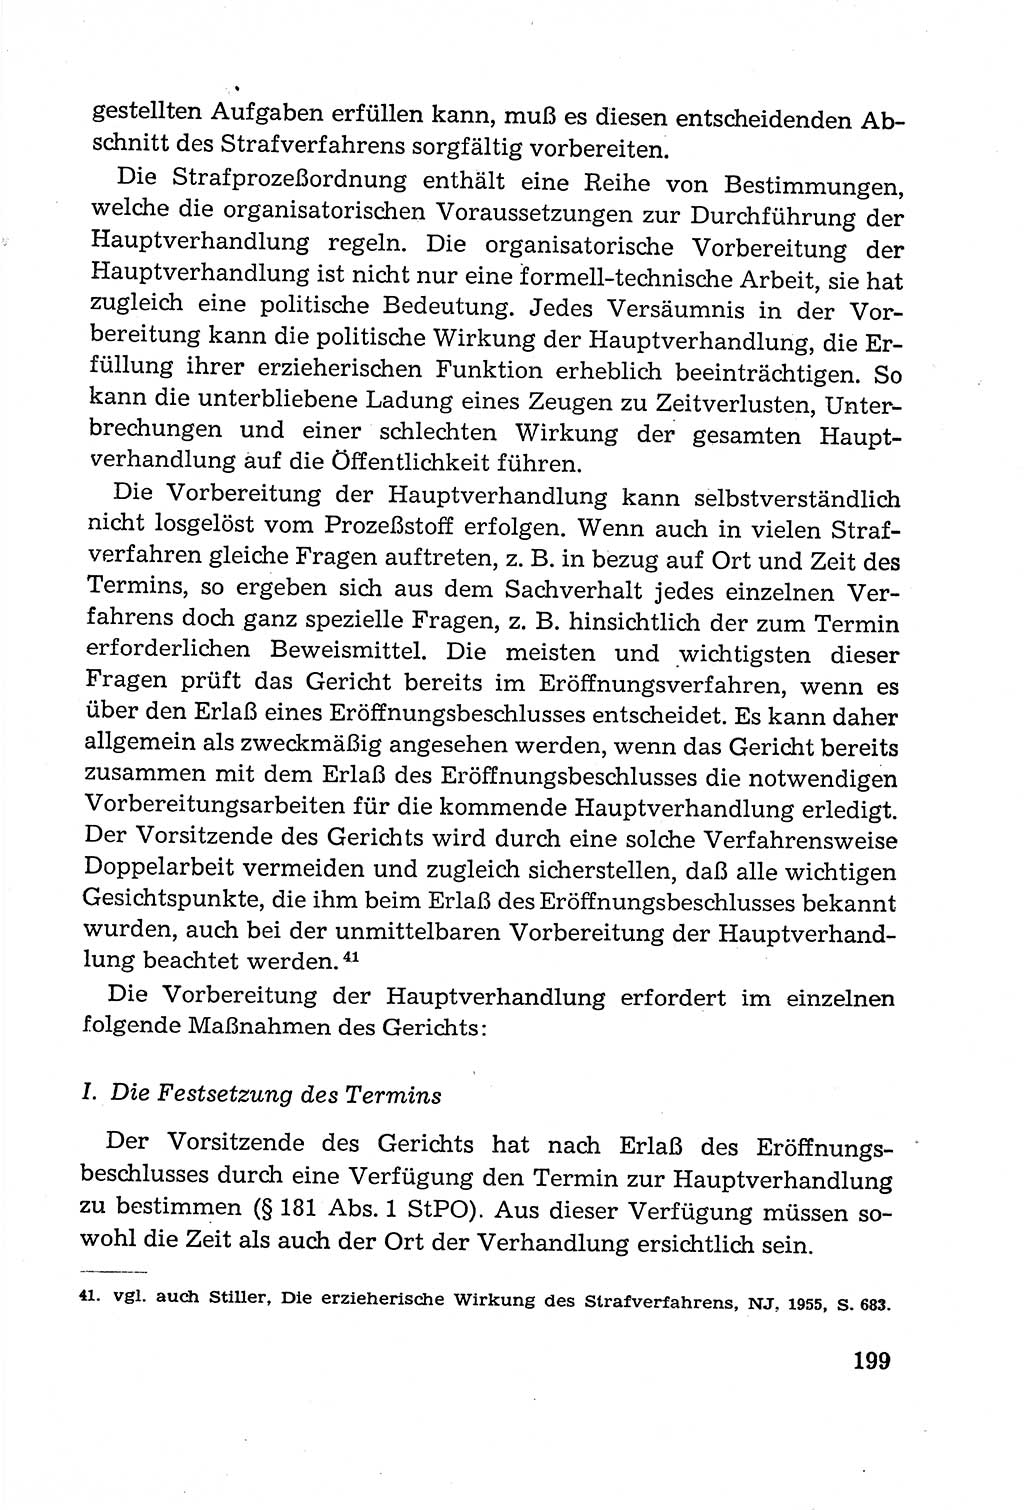 Leitfaden des Strafprozeßrechts der Deutschen Demokratischen Republik (DDR) 1959, Seite 199 (LF StPR DDR 1959, S. 199)